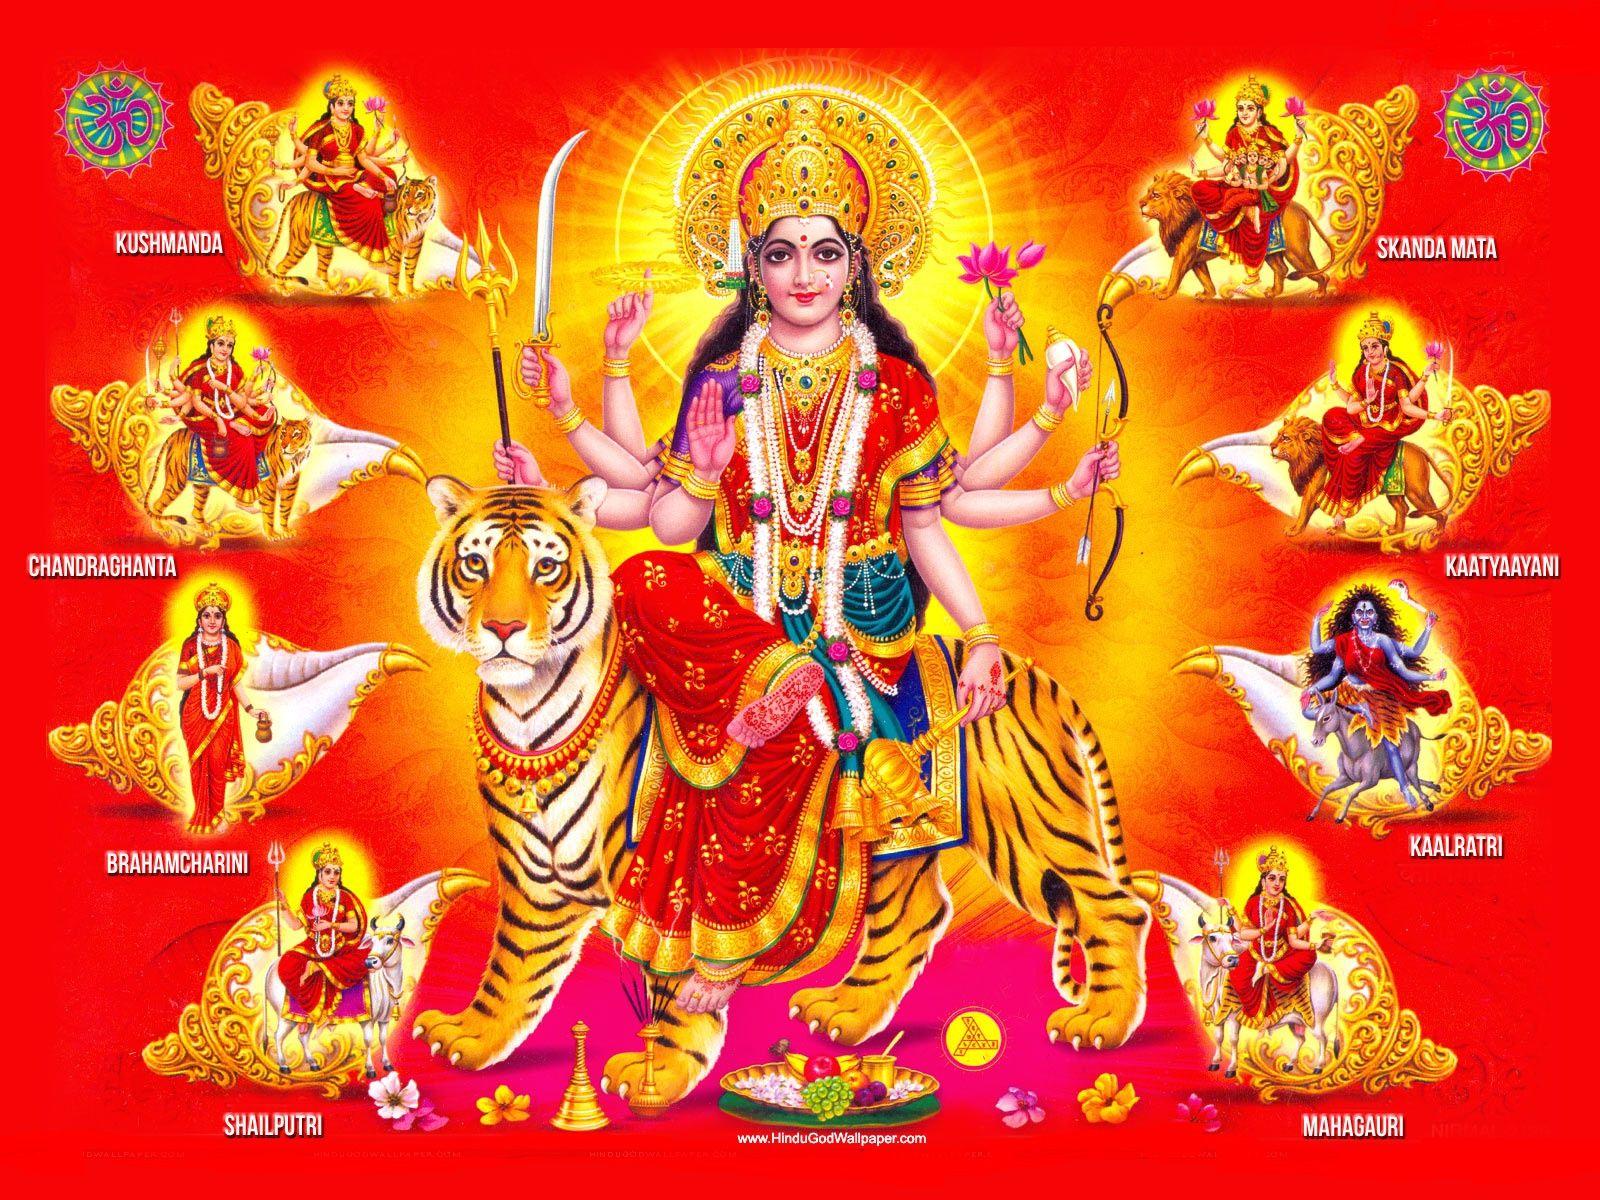 96 Maa Sherawali HD Wallpapers ideas  wallpaper image photo durga images  durga goddess